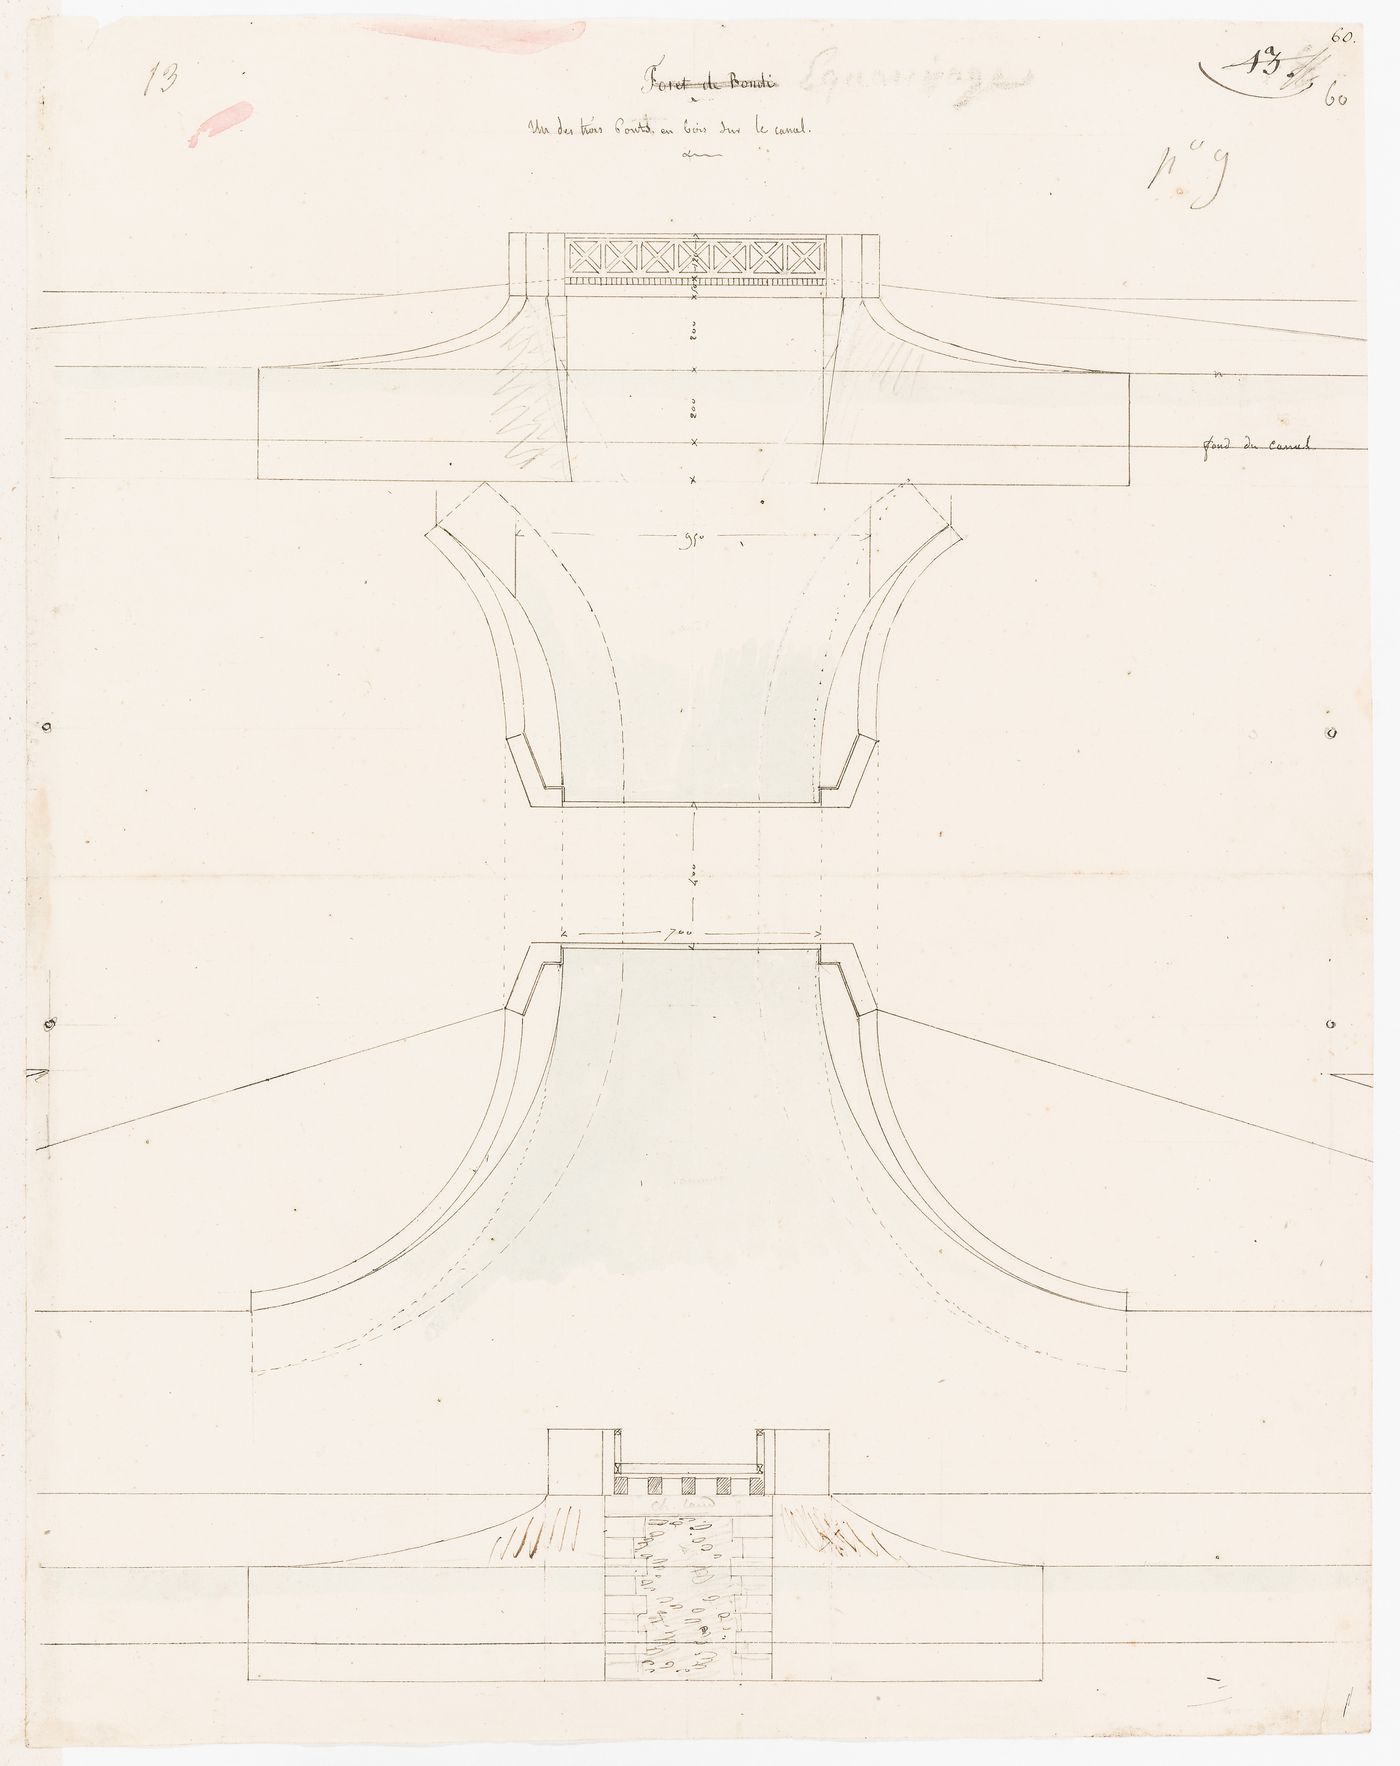 Project for Clos d'équarrissage, fôret de Bondy: Plan, elevation, and section for a wooden bridge